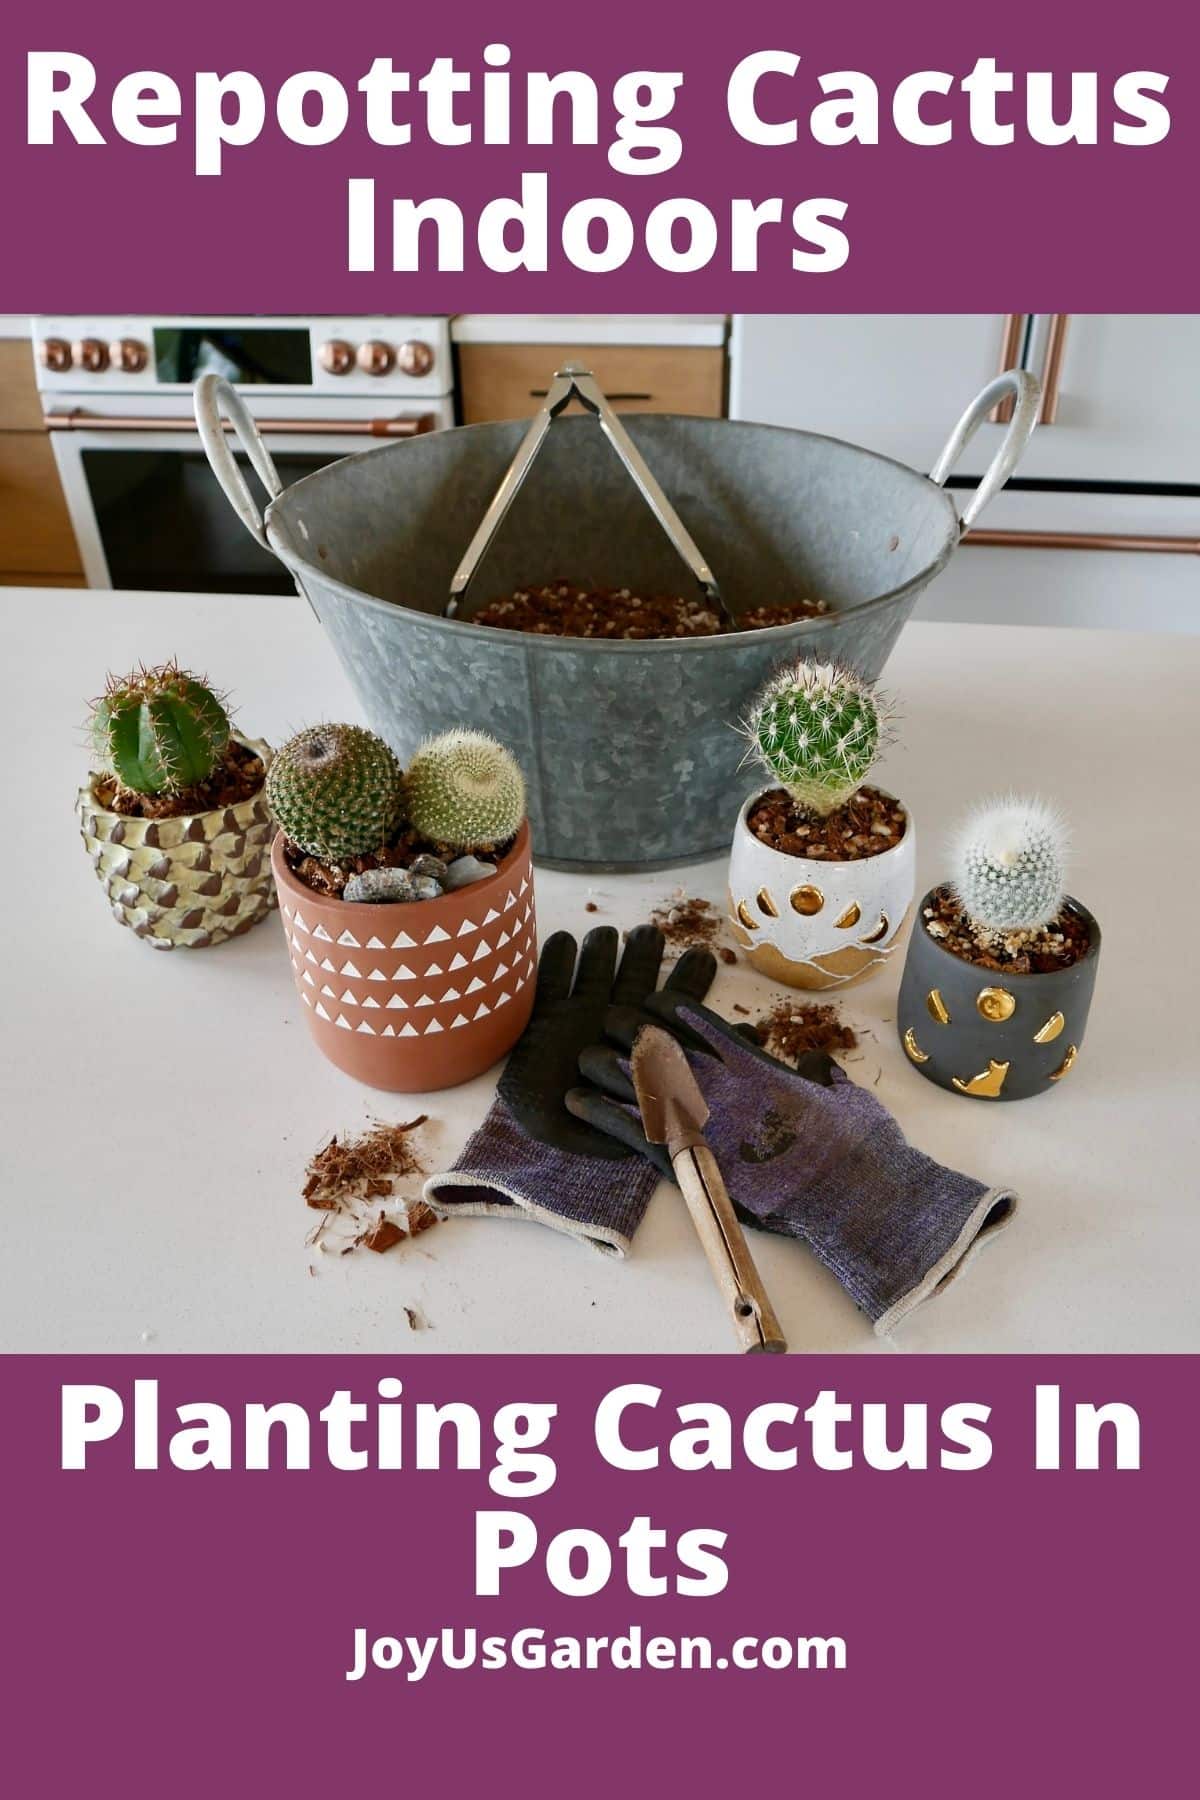  Oorplant van kaktus binnenshuis: Plant kaktus in potte